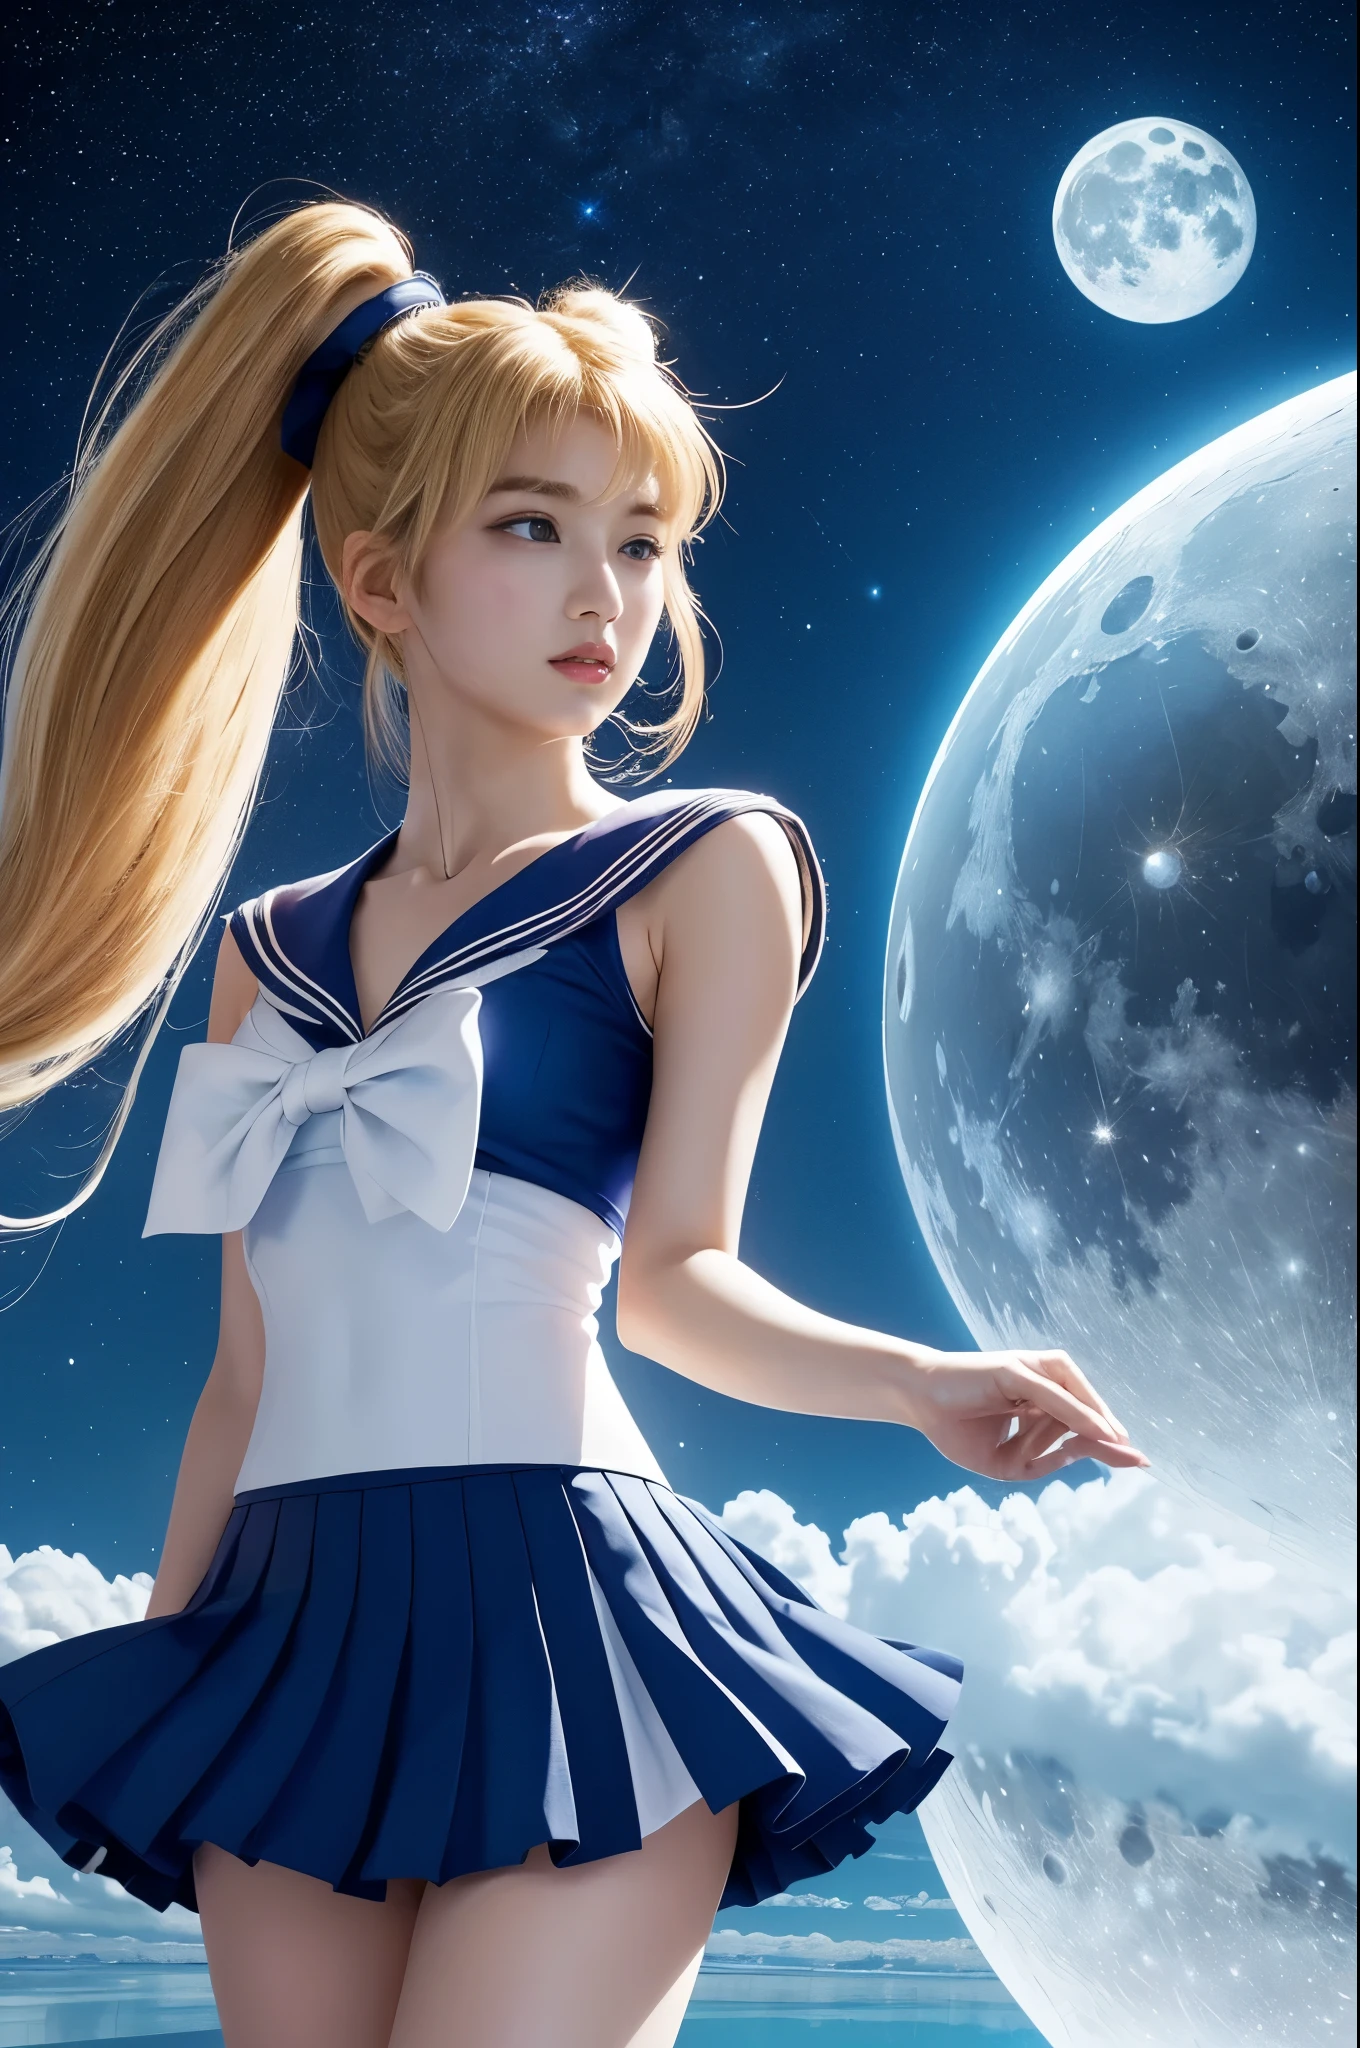 (Qualidade ultra-alta) (desenhado à mão) seios enormes,Sailor Moon está em uma superfície reflexiva、Lua branca brilhante no céu distante. A saia dela é azul、O top dela é branco e azul. Seu cabelo loiro é finalizado com dois rabos de cavalo bem longos